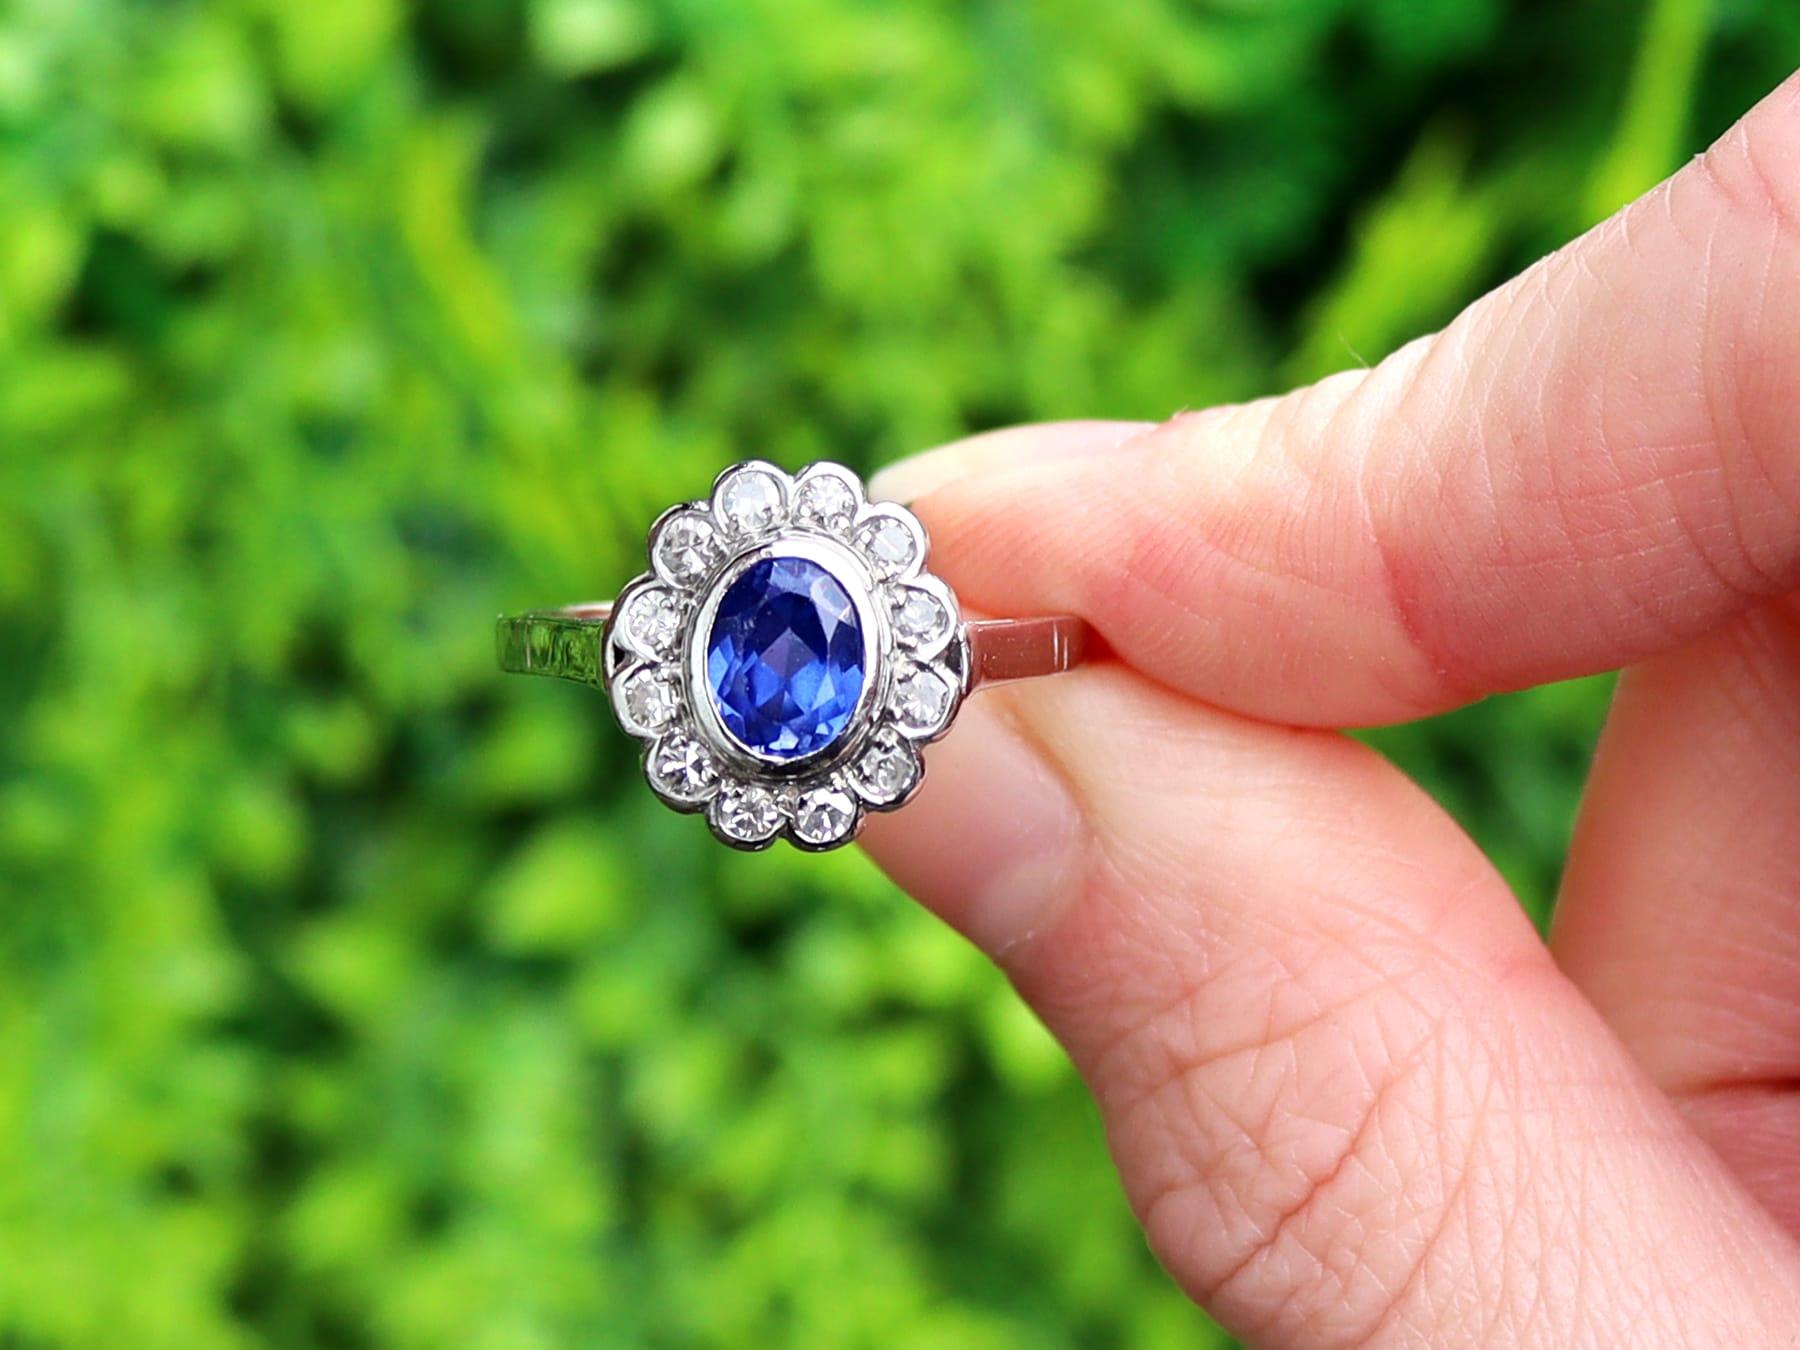 Eine feine und beeindruckende 1,12 Karat Saphir und 0,48 Karat Diamant, Platin-Cocktail-Ring; Teil unserer antiken Nachlassschmuck Sammlungen.

Dieser atemberaubende, feine und beeindruckende antike blaue Saphirring mit Ovalschliff wurde in Platin